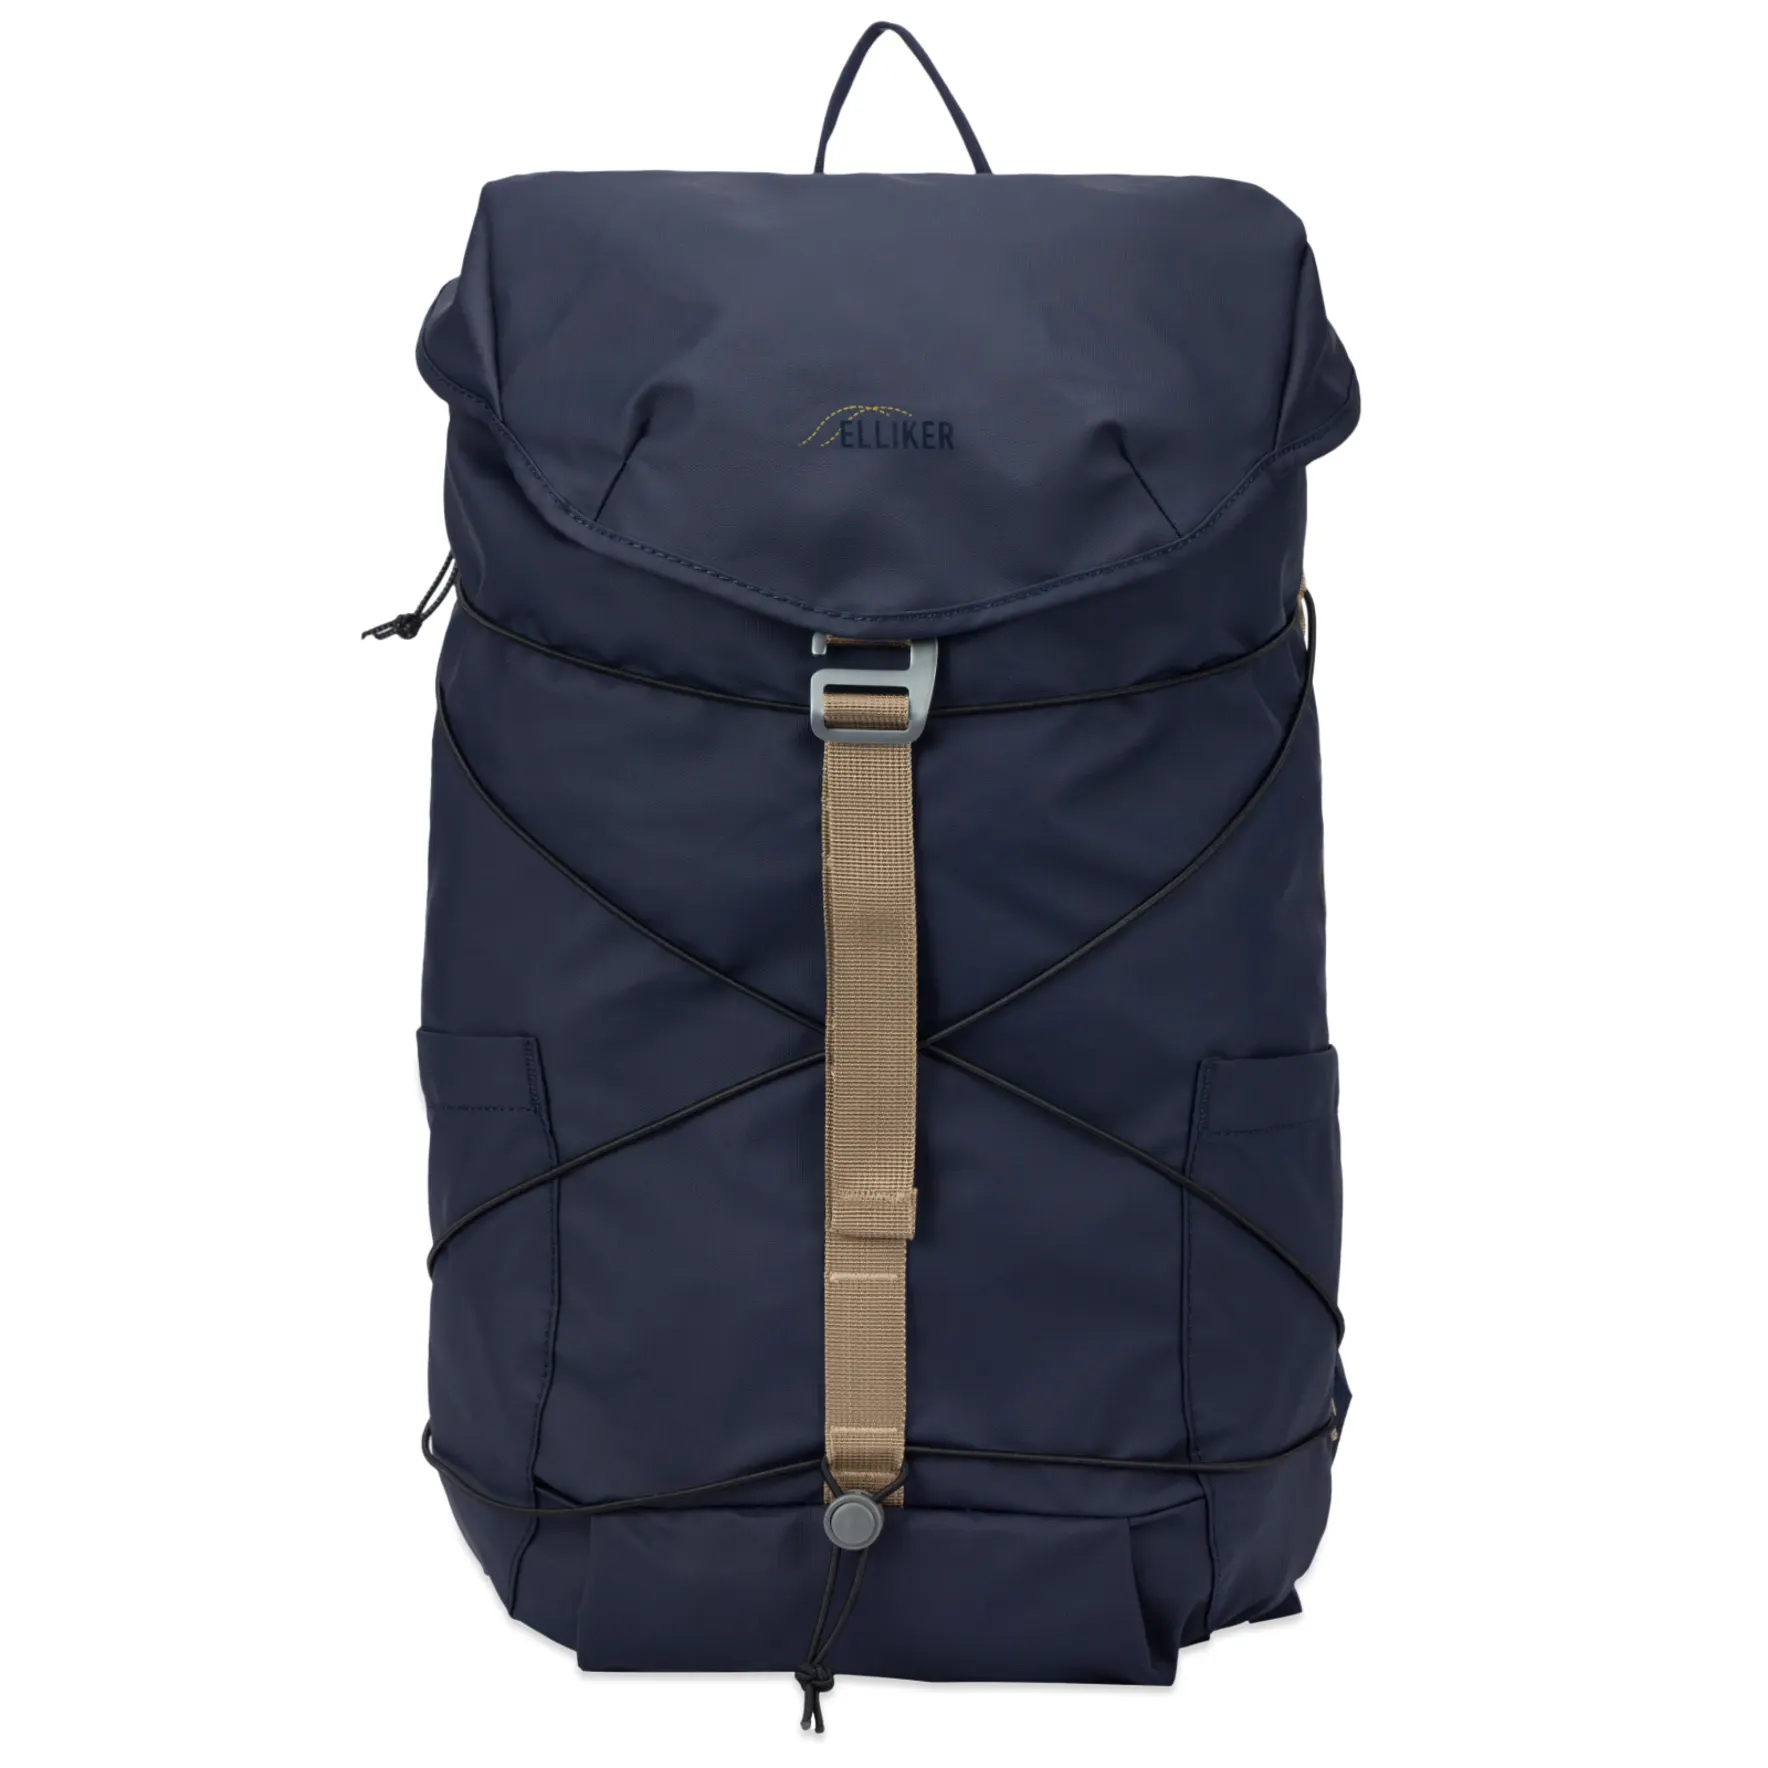 Рюкзак Elliker Wharfe Flapover Backpack, темно-синий рюкзак elliker dayle brown